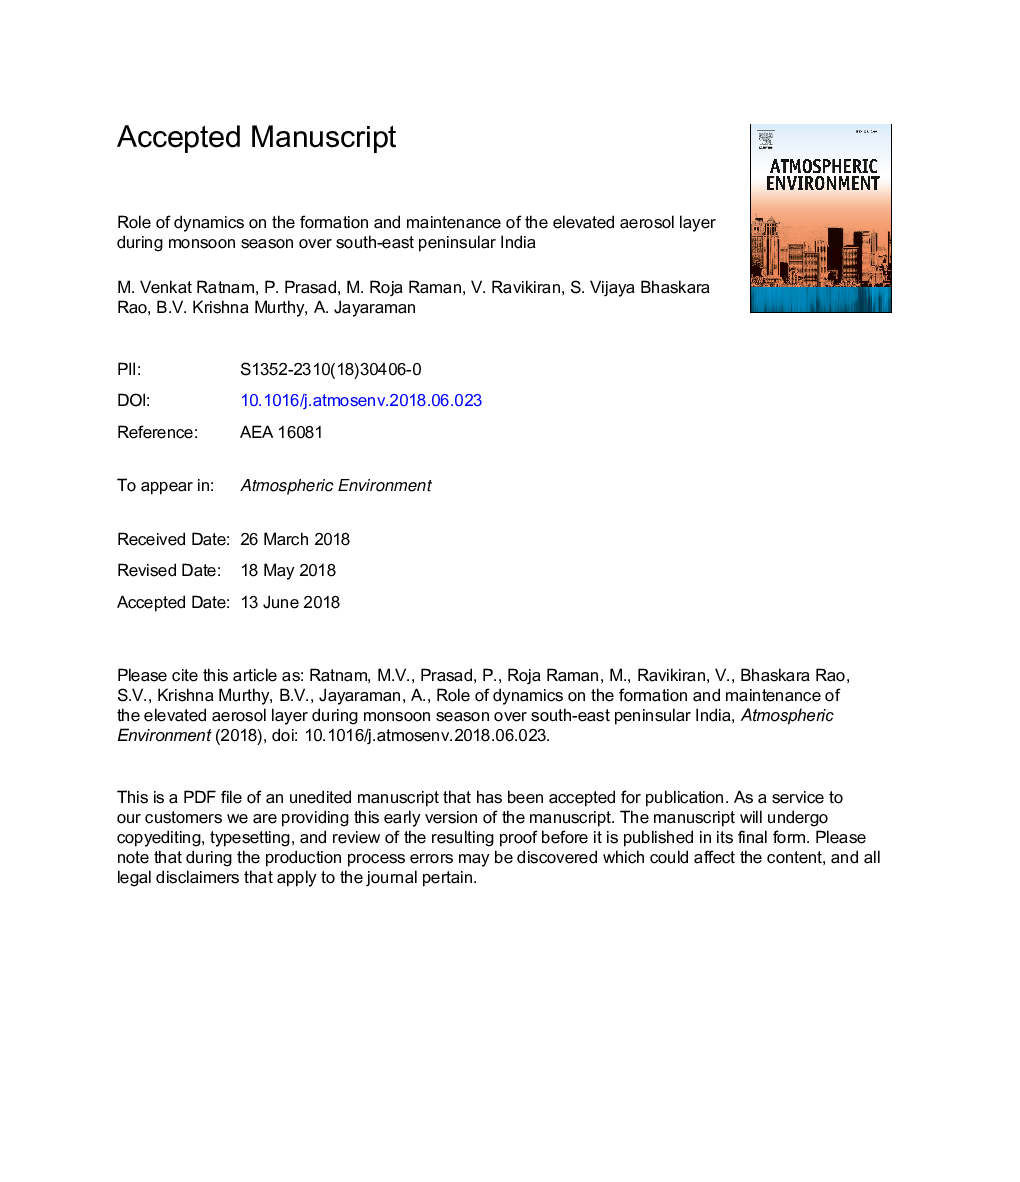 نقش دینامیک در شکل گیری و نگهداری لایه های بالاتری از فاز آئروسل در طی فصل موسمی در هندوستان شبه جزیره جنوب شرقی 